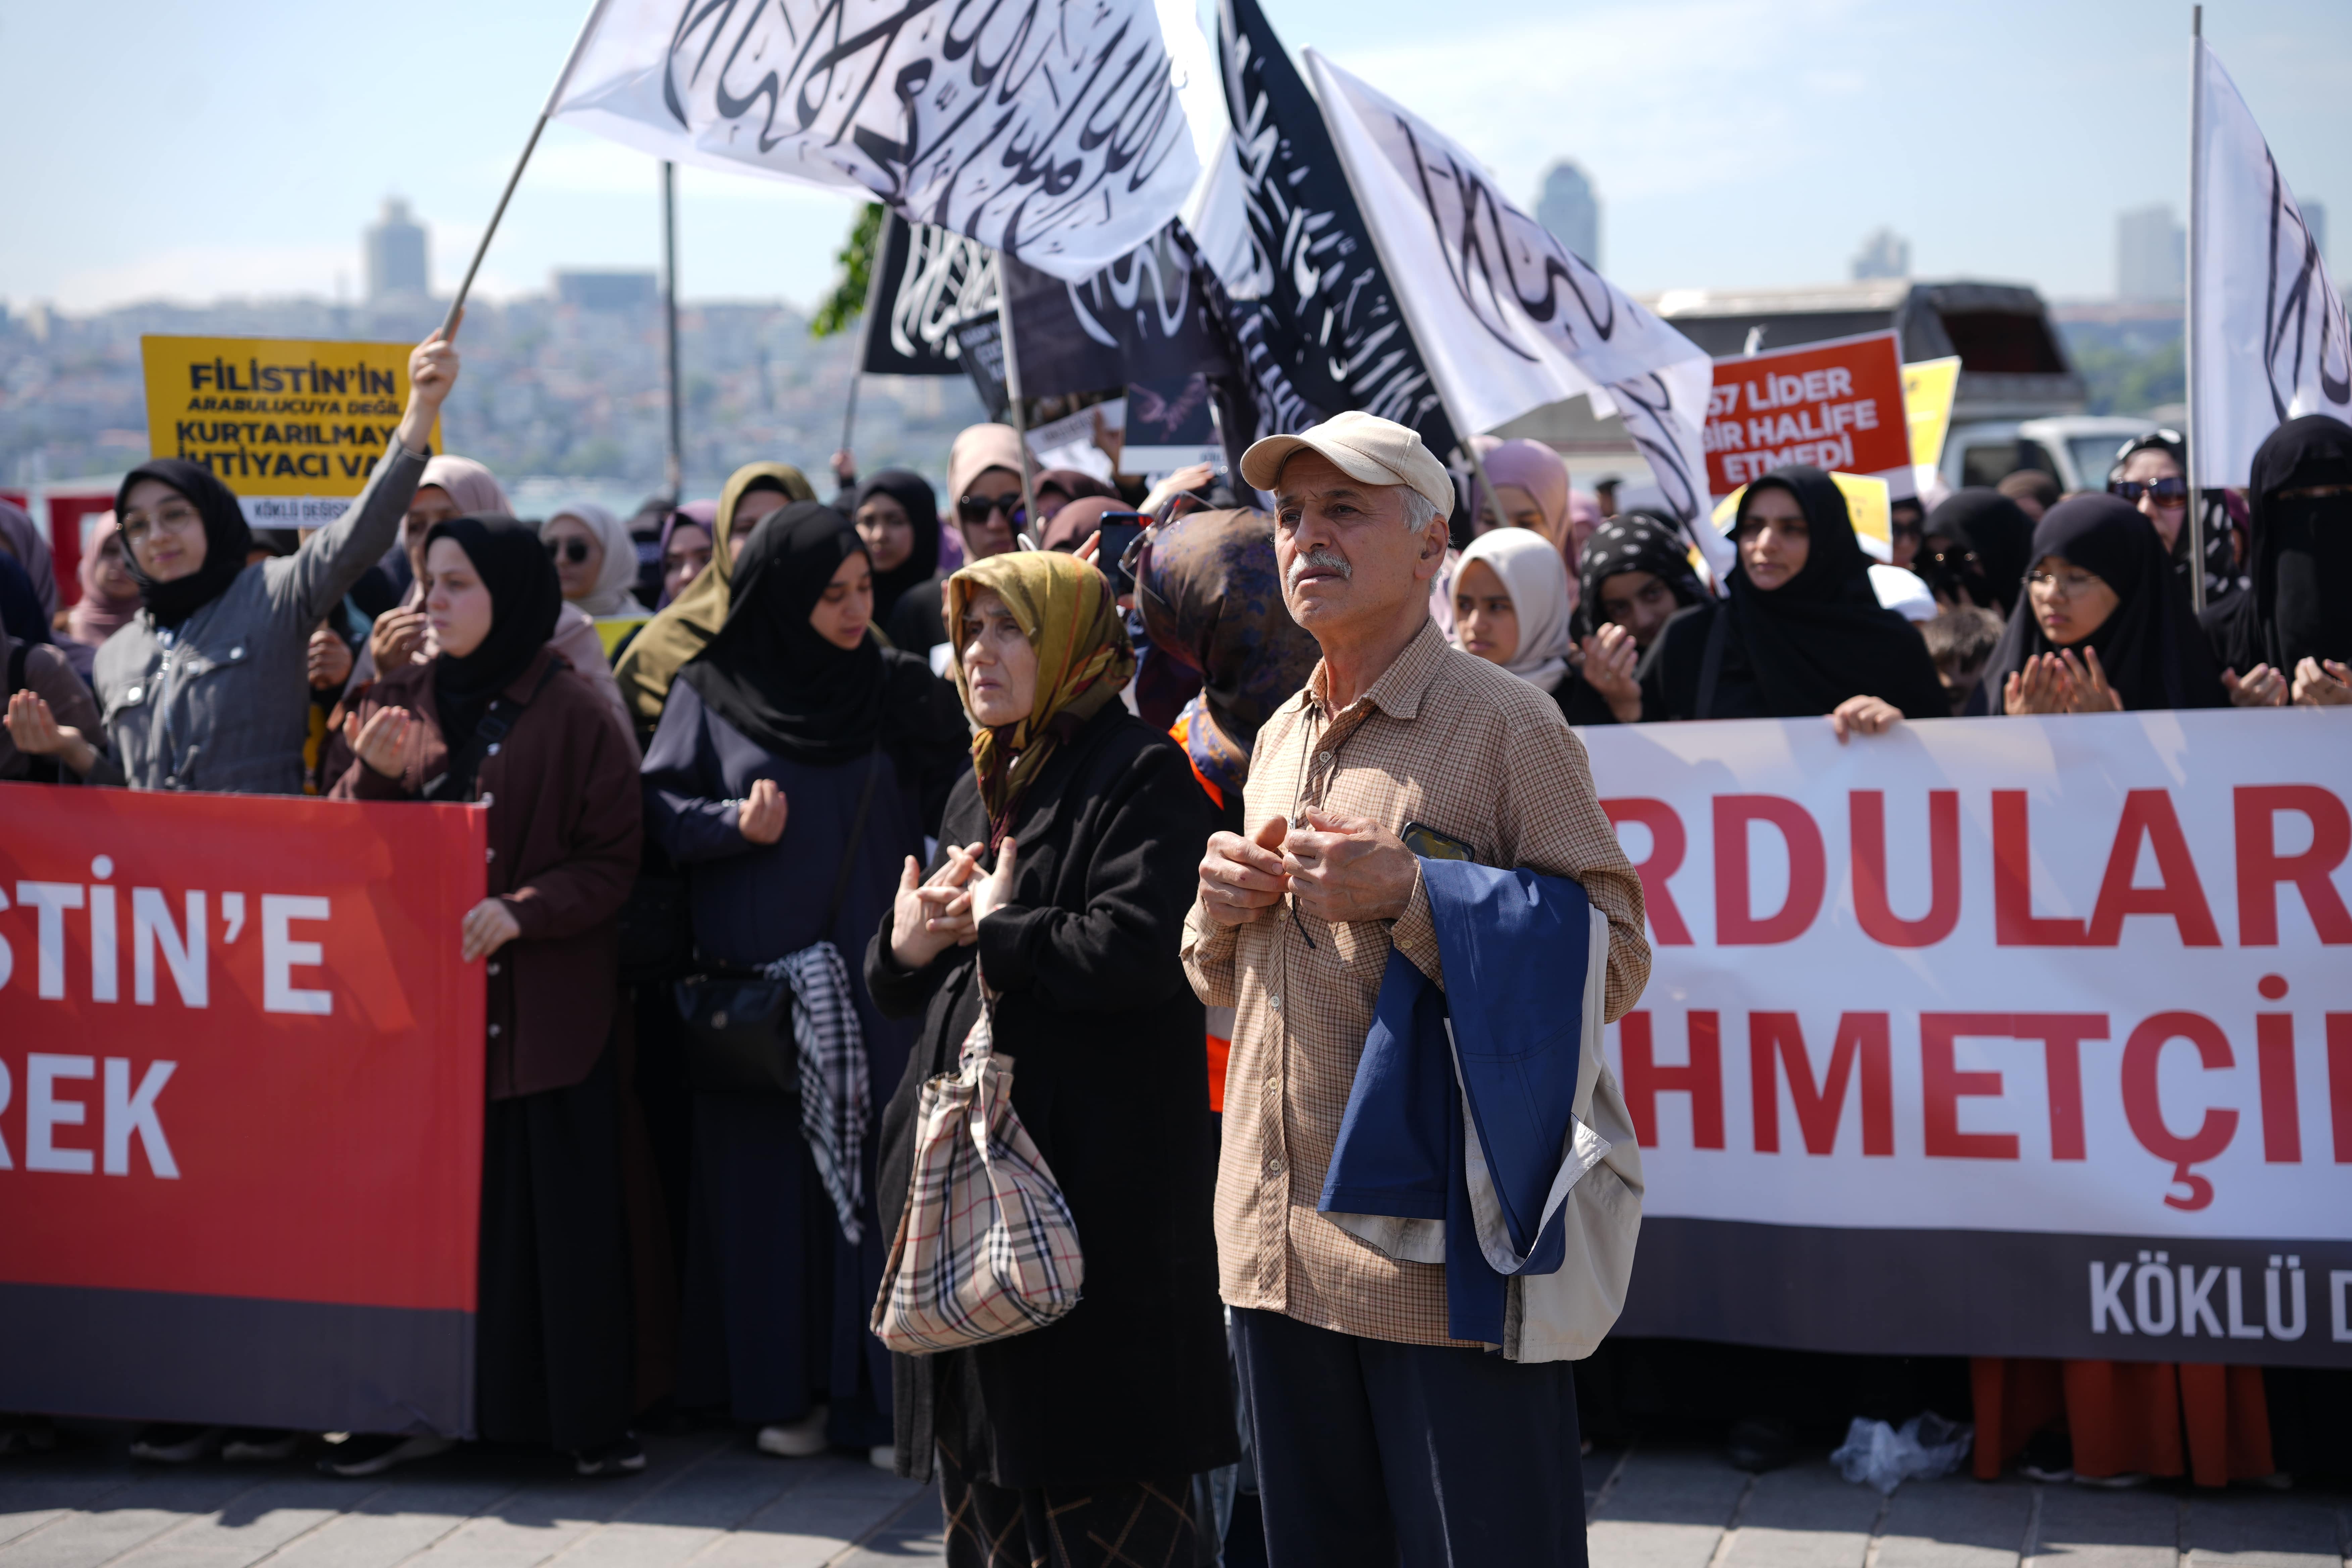 Hizbut Tahrir İstanbul Üsküdar Hilafet Gazze yürüyüş halk-min.JPG